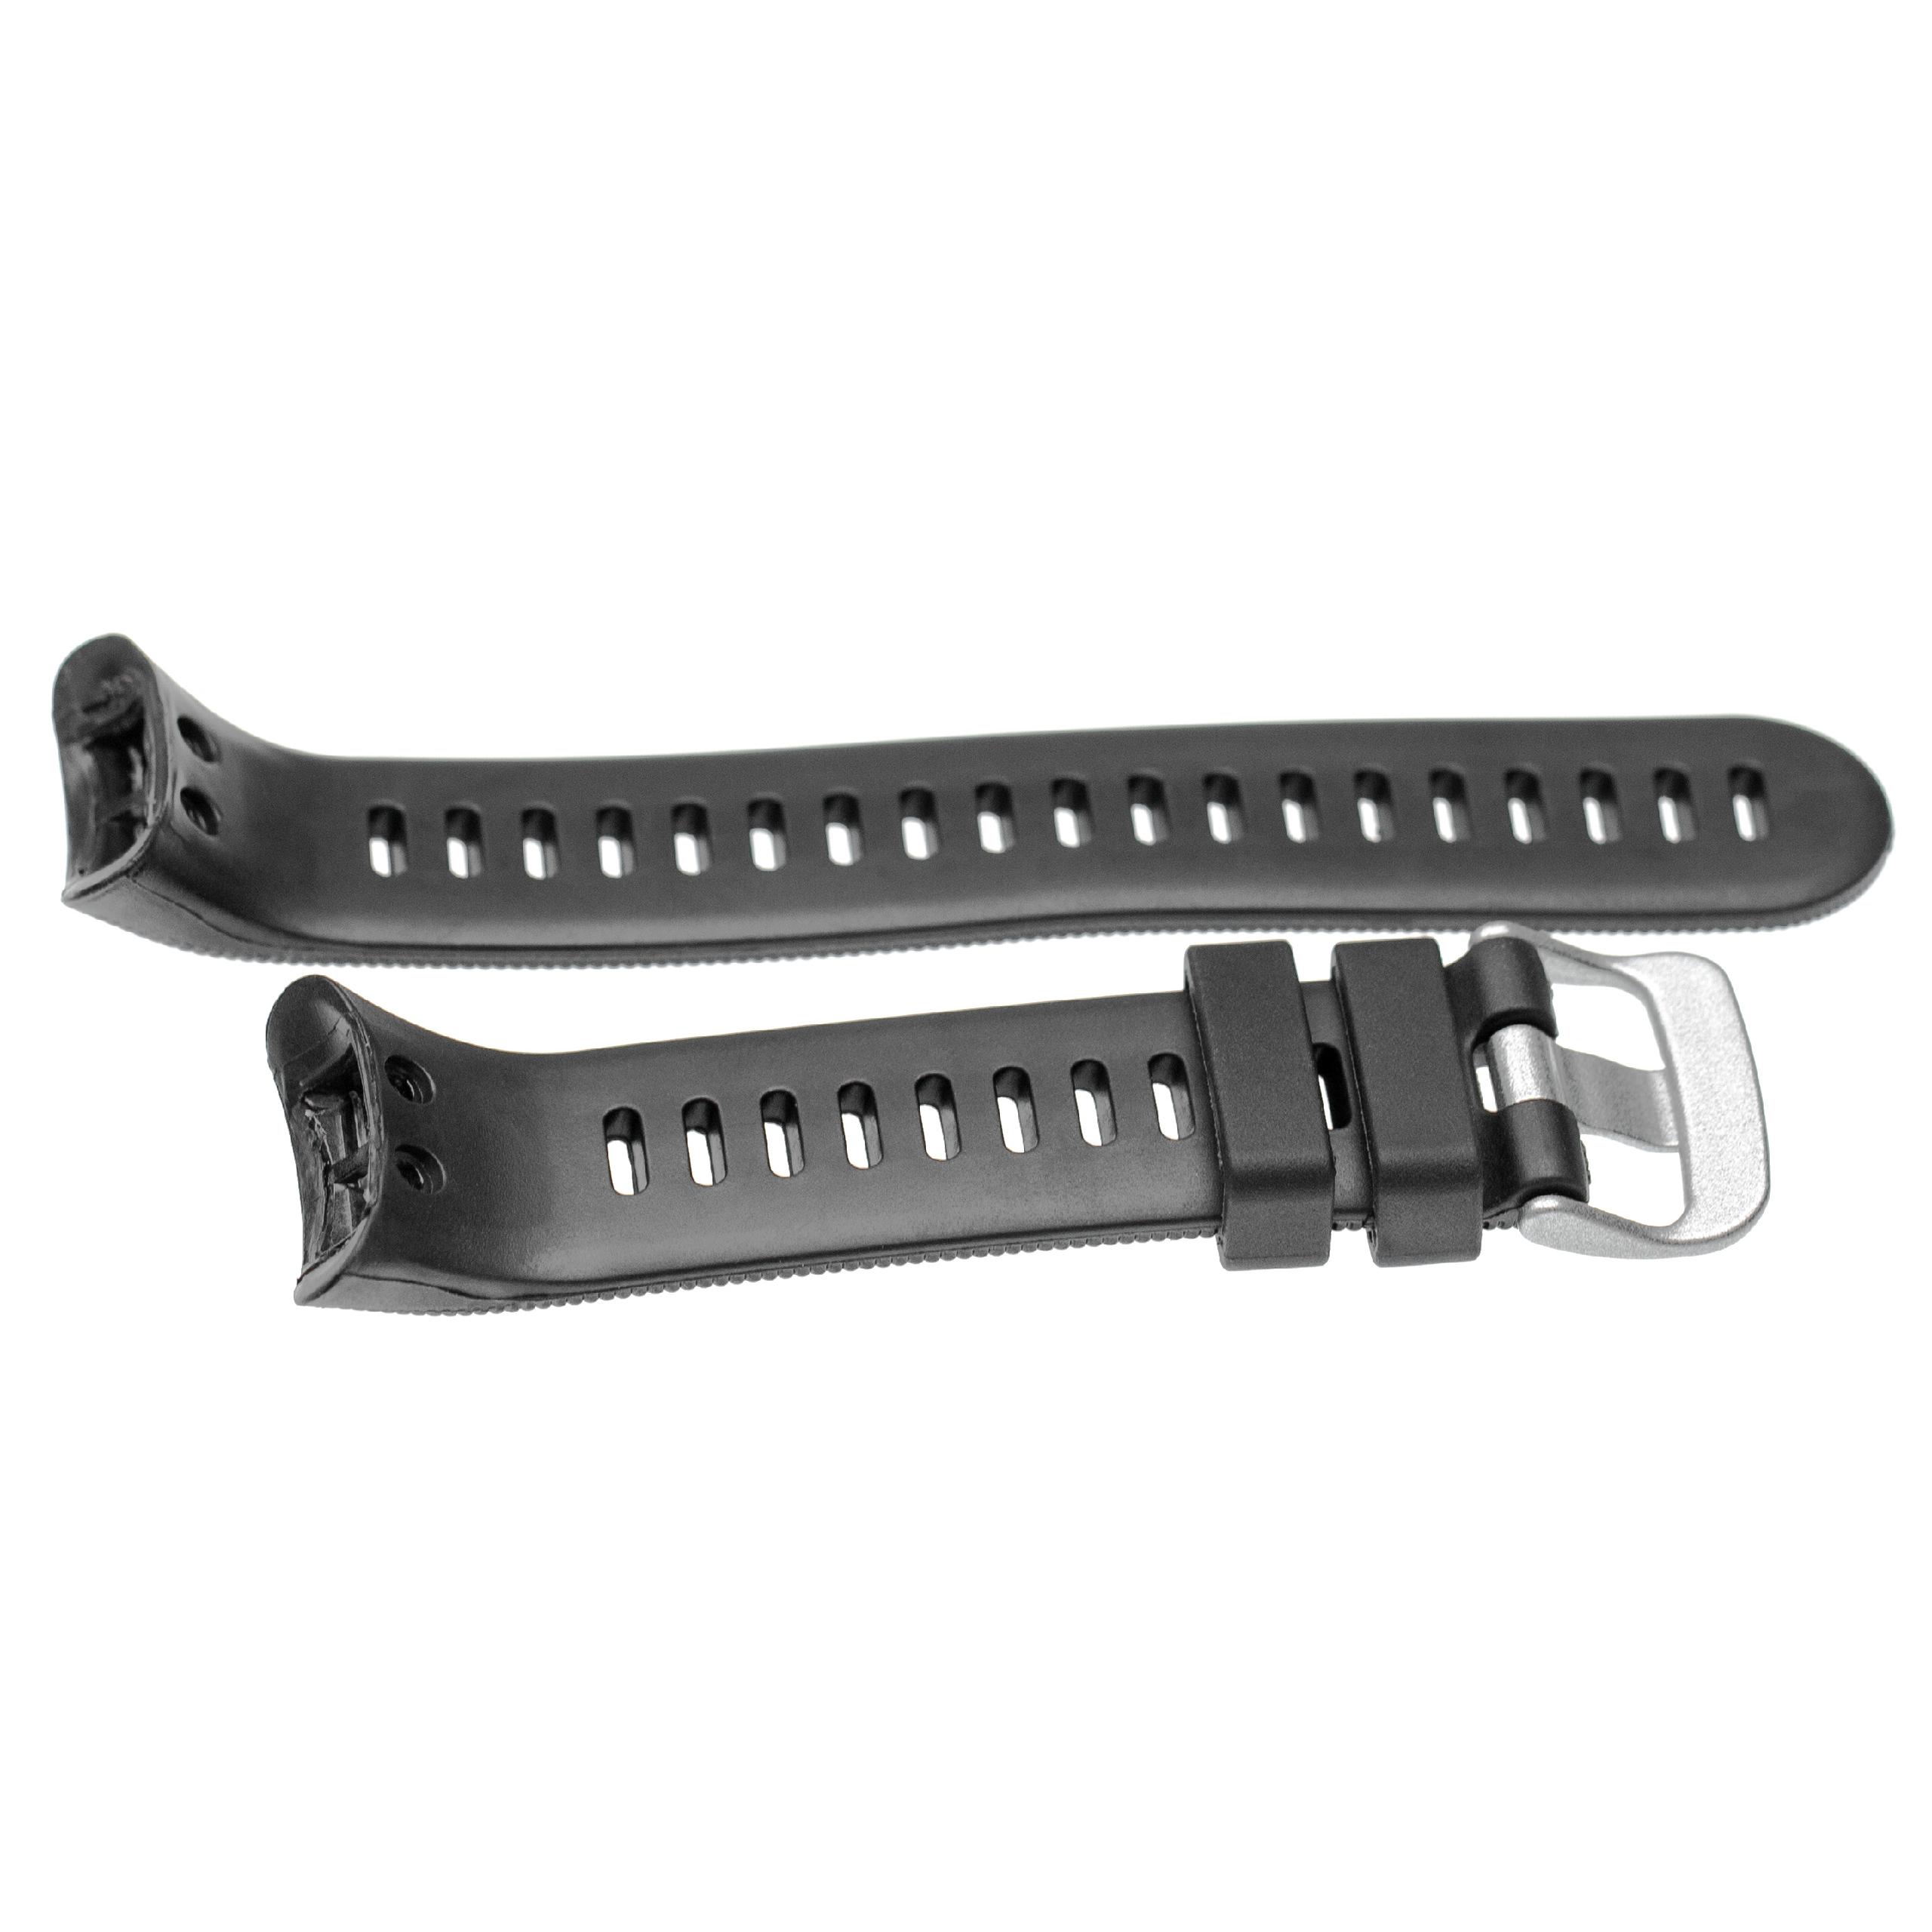 Bracelet pour montre intelligente Garmin Forerunner - 11,6 + 9,1 cm de long, 25mm de large, silicone, noir